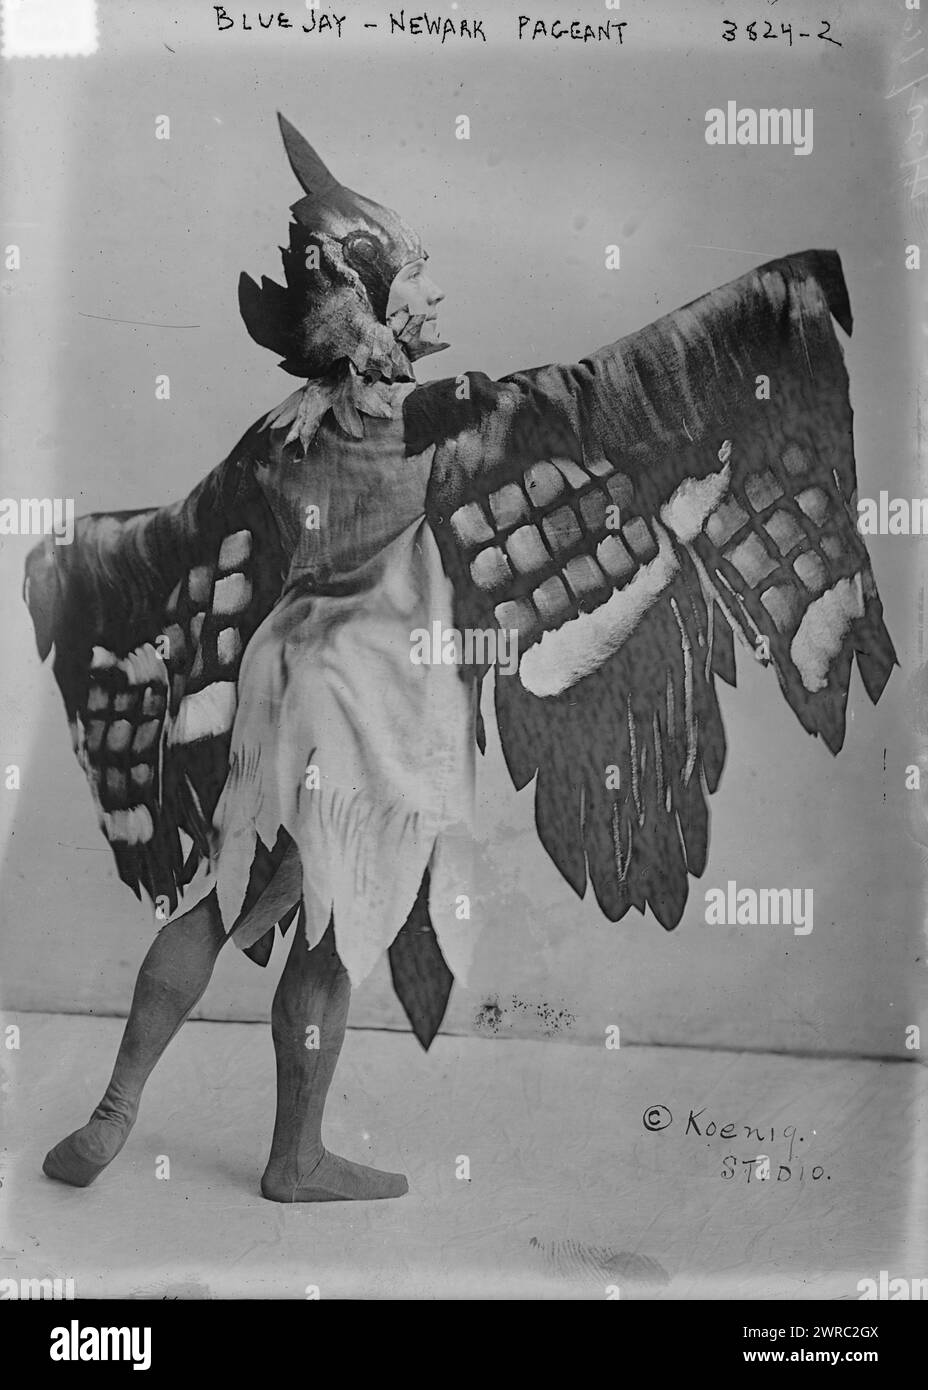 Blue Jay - Newark Pageant, la fotografia mostra una persona vestita da un uccello di jay blu che ha partecipato al concorso del 1916 che ha celebrato il 250° compleanno di Newark, New Jersey., tra ca. 1915 e ca. 1920, Glass negative, 1 negativo: Glass Foto Stock